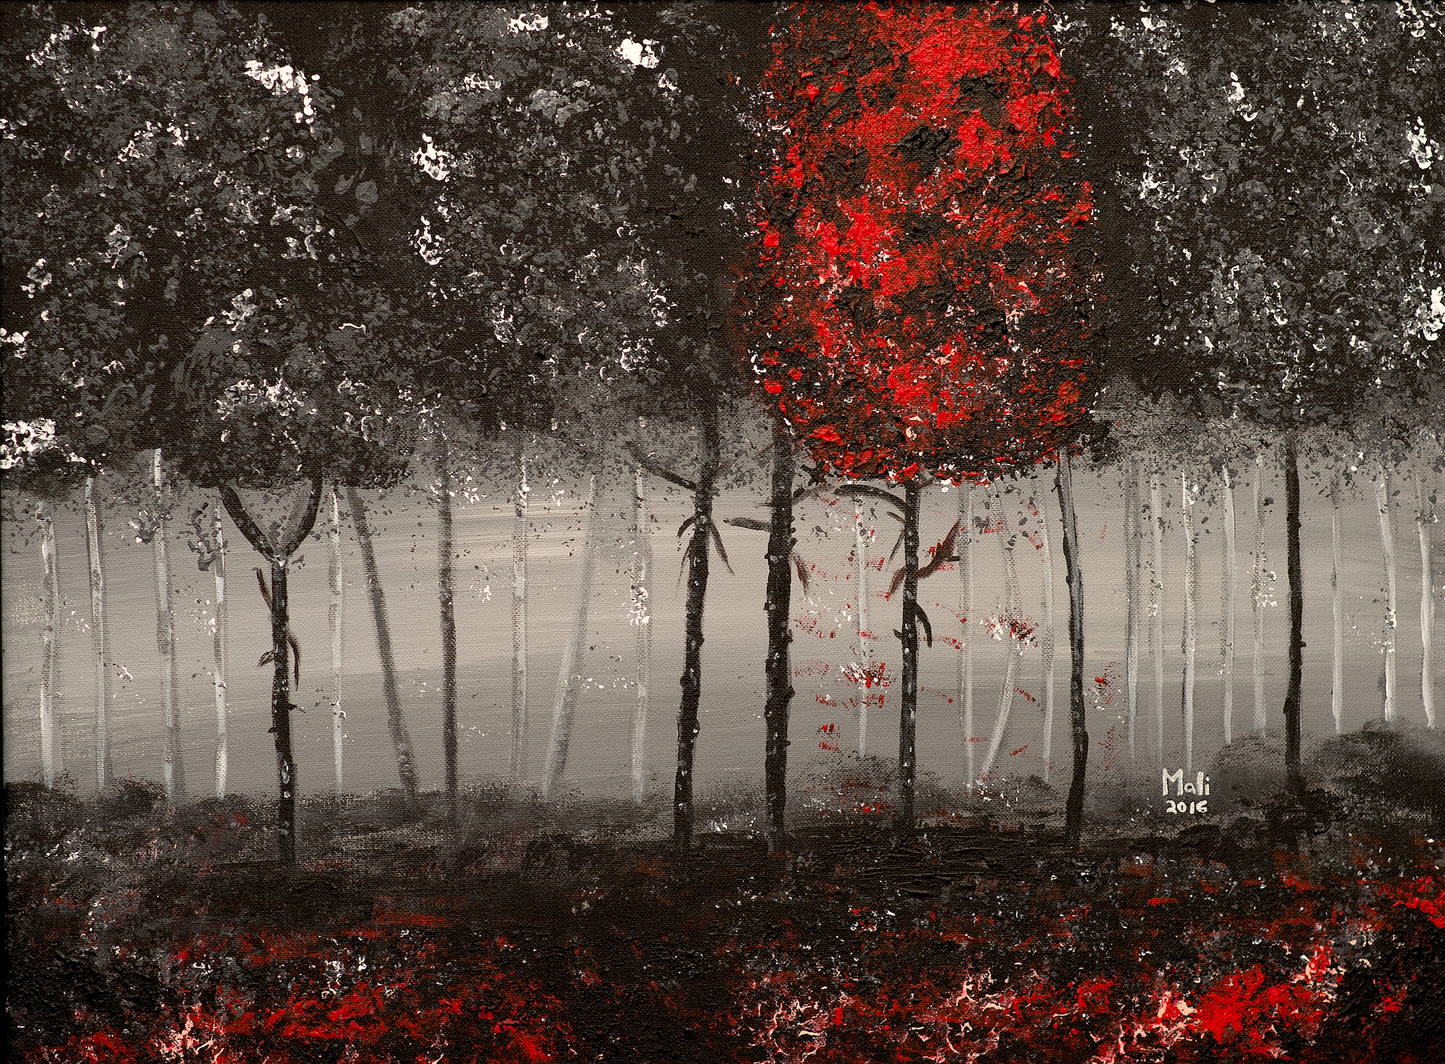 "Dark Forest" by Mali Armand